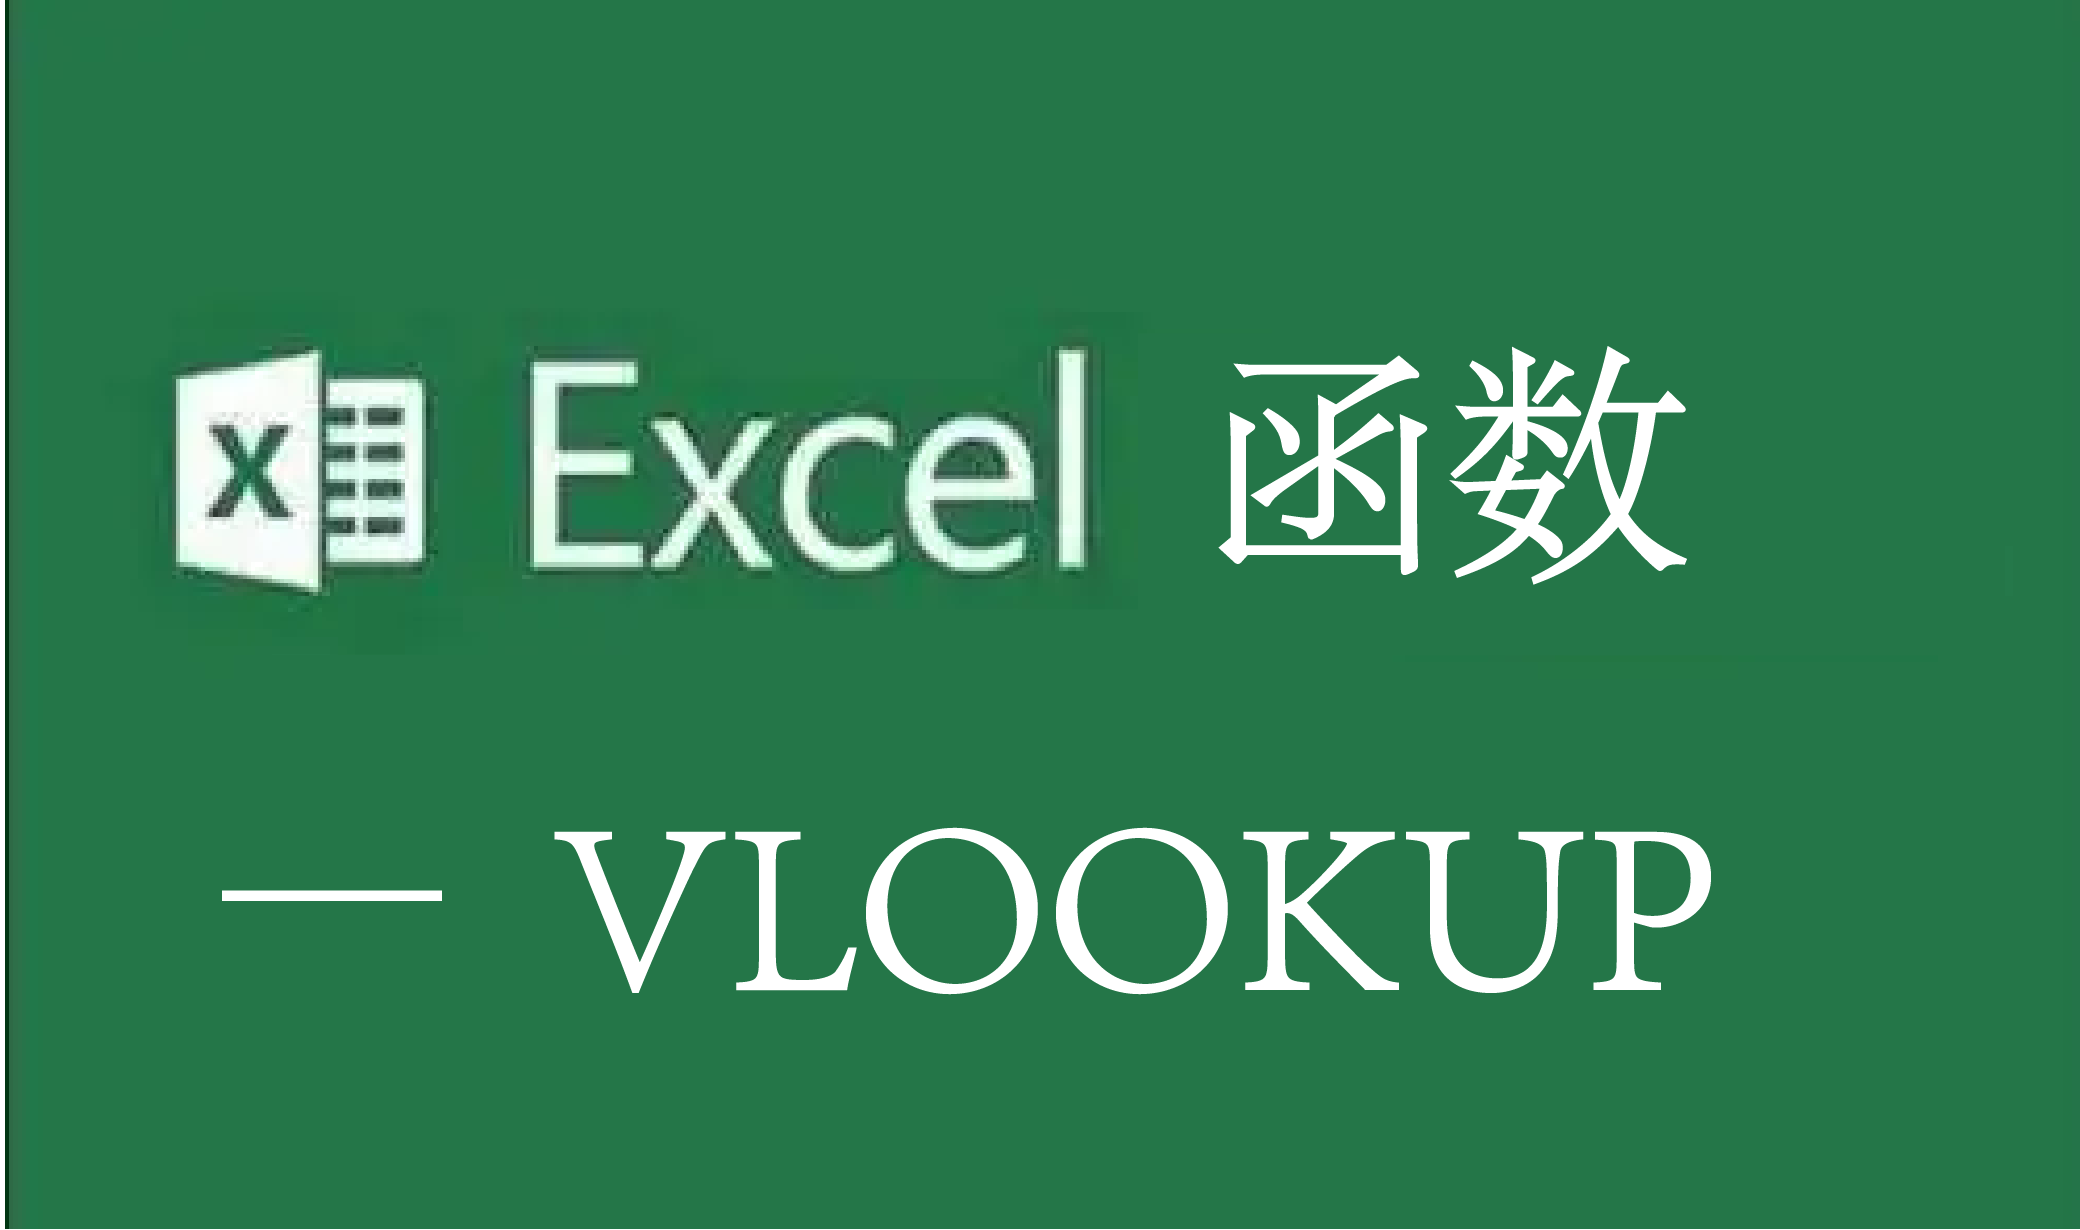 Excel函数——vlookup函数用法